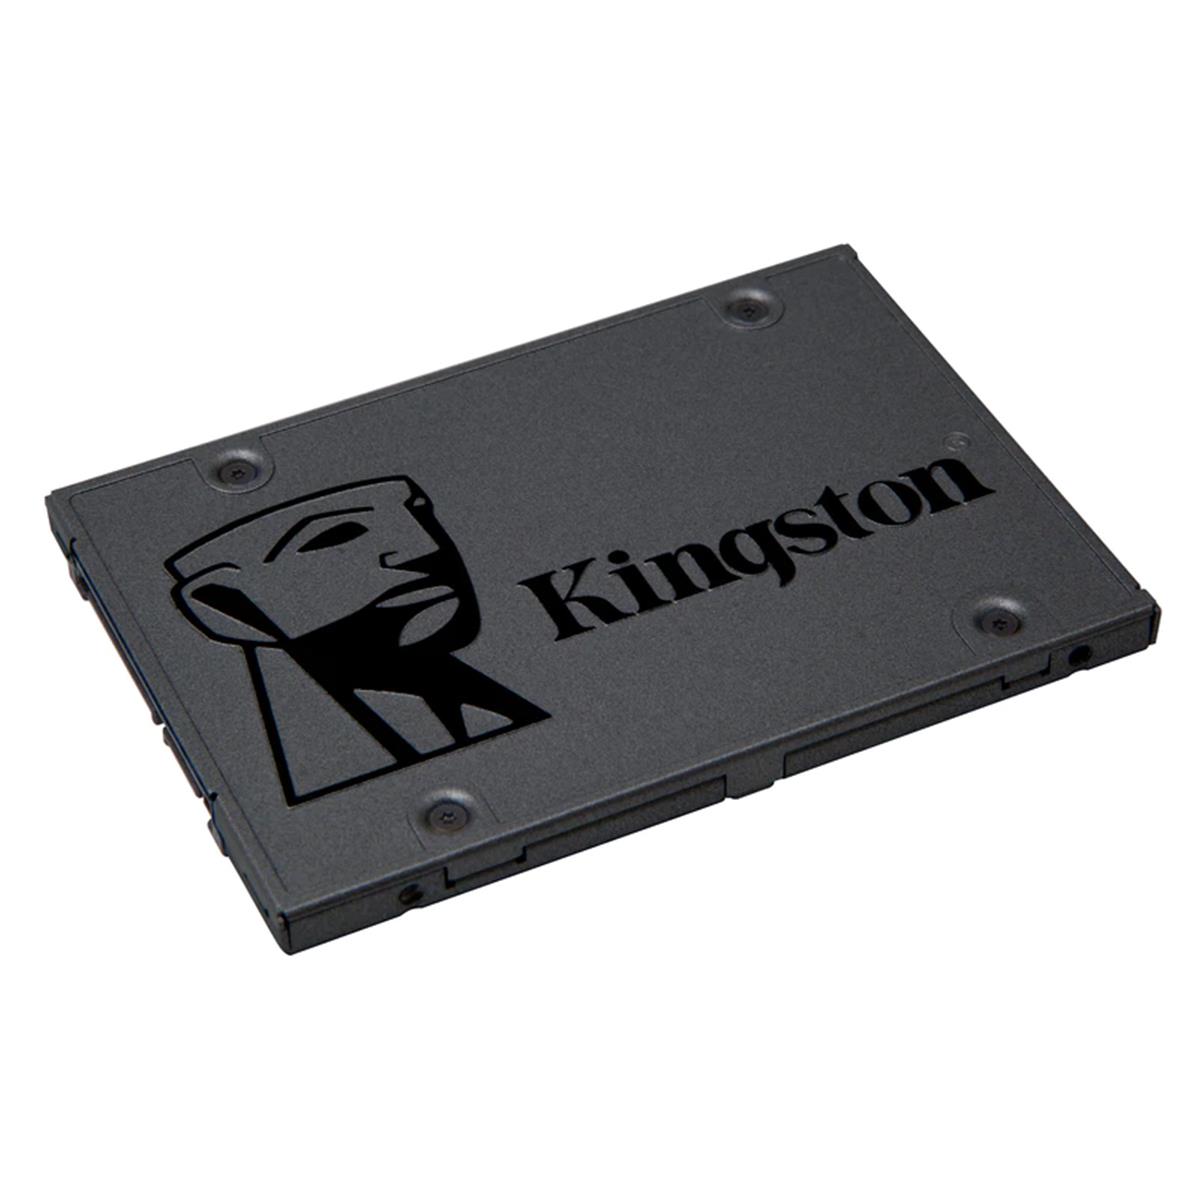 SSD 480 GB KINGSTON SA400S37/480G - SATA III